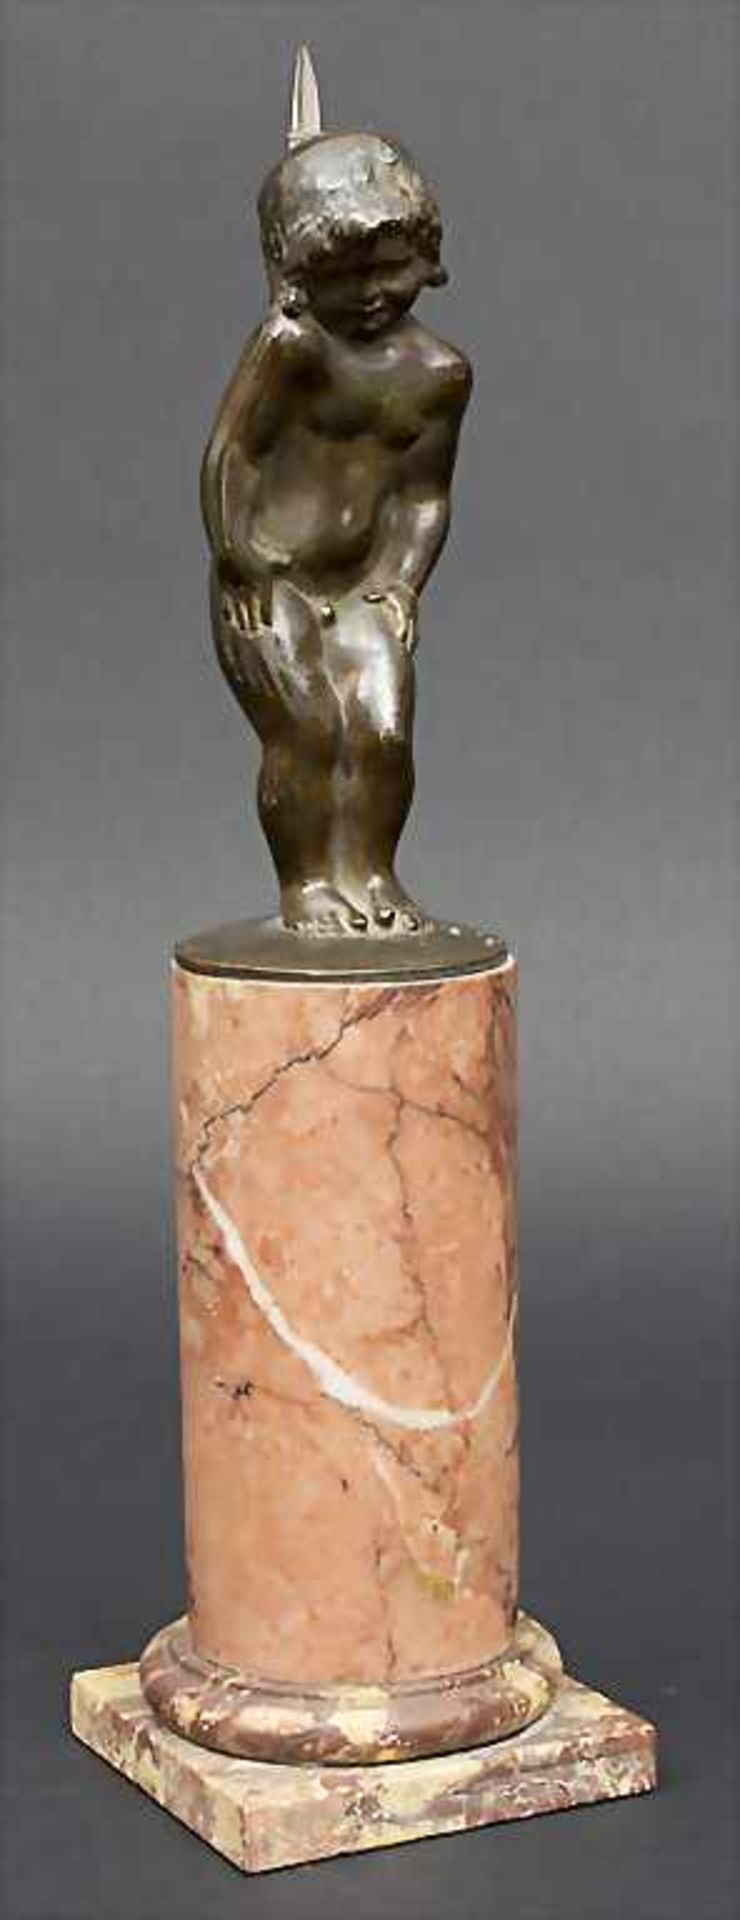 Jugendstil Putto / Art Nouveau Putto, Louis Aimé Lejeune, 1884-1969Technik: Bronze, patiniert, auf